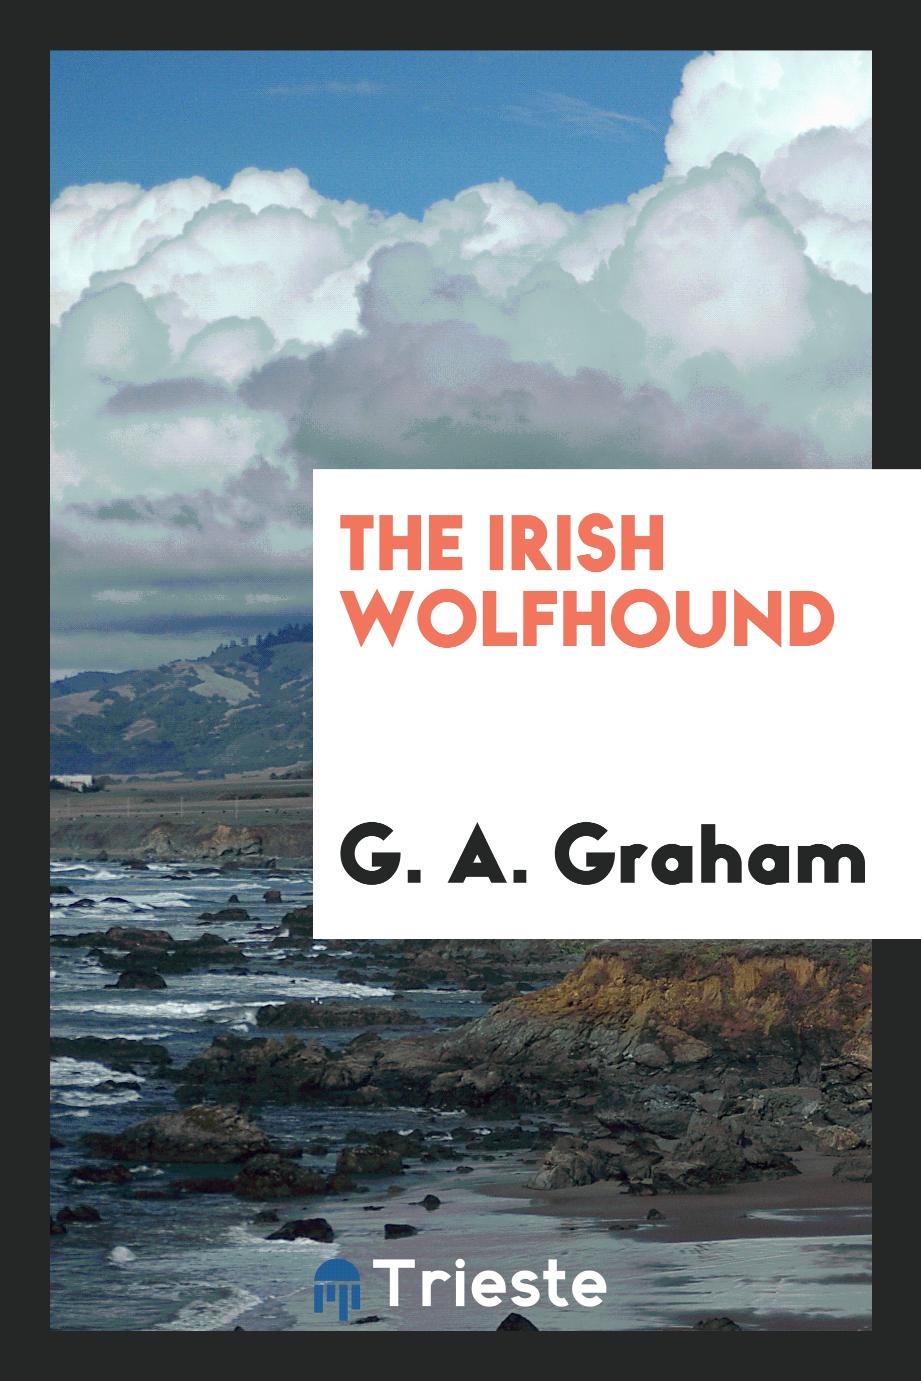 The Irish wolfhound